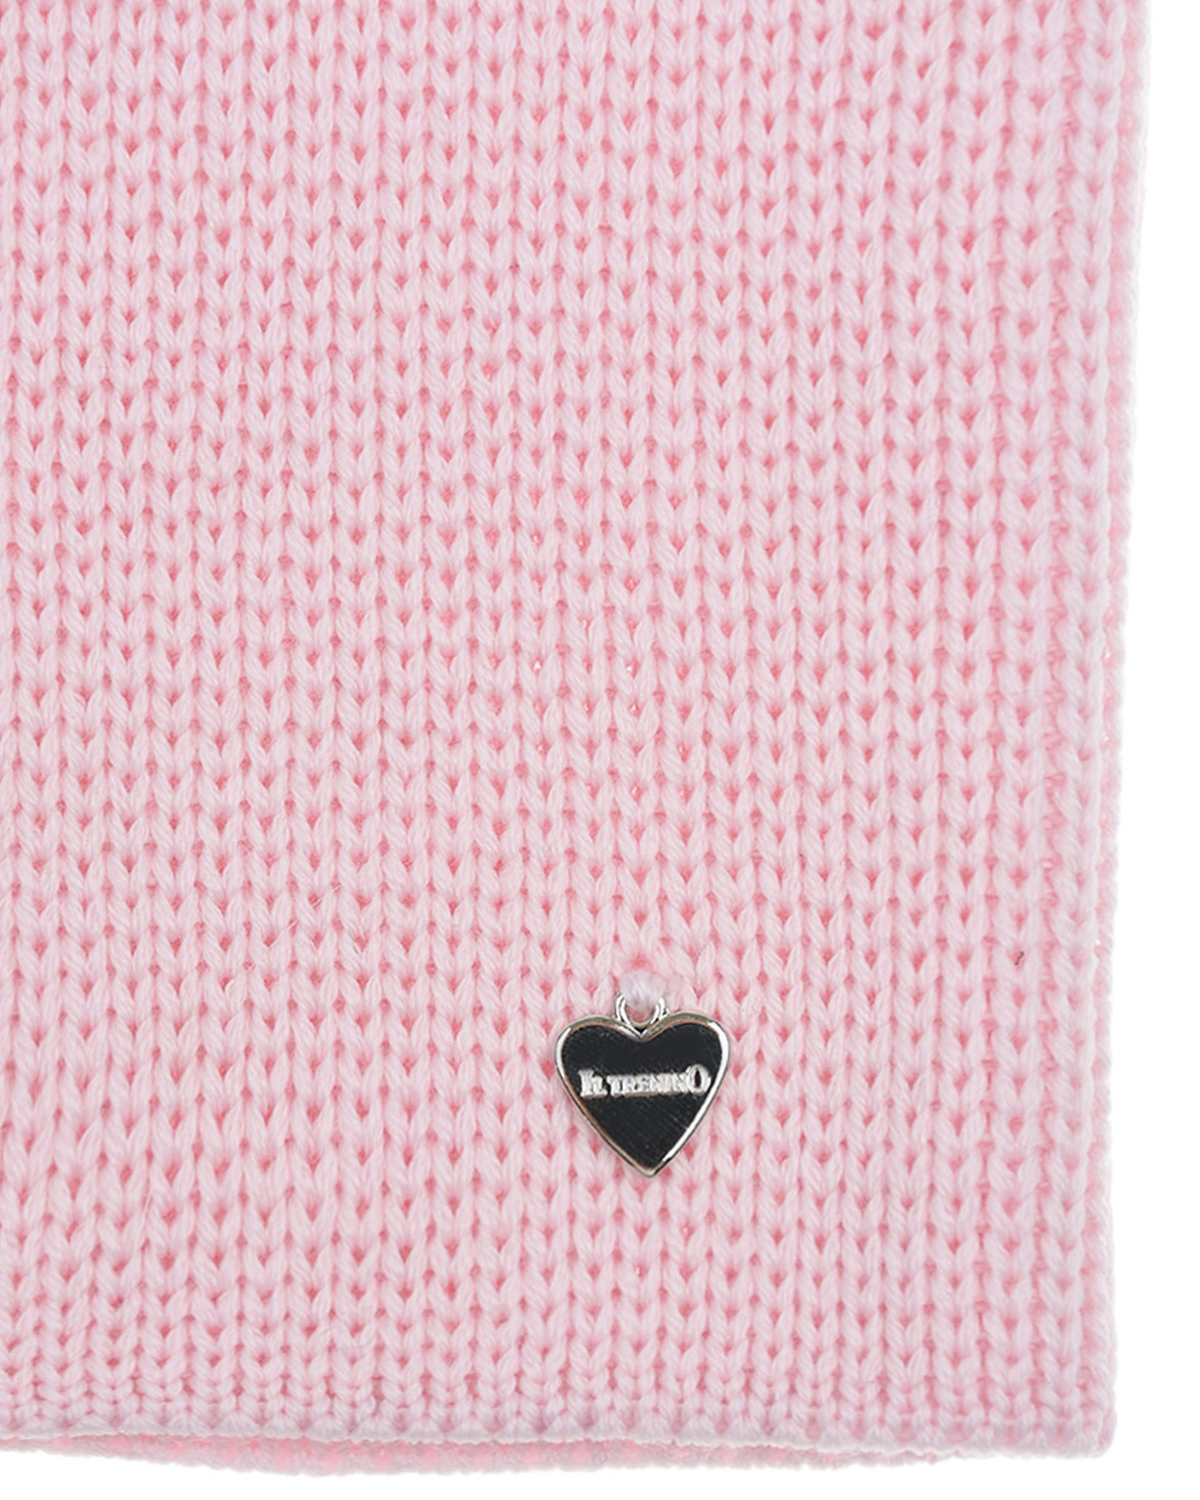 Шерстяной шарф-ворот розового цвета, 24х30 см Il Trenino детский, размер unica - фото 4